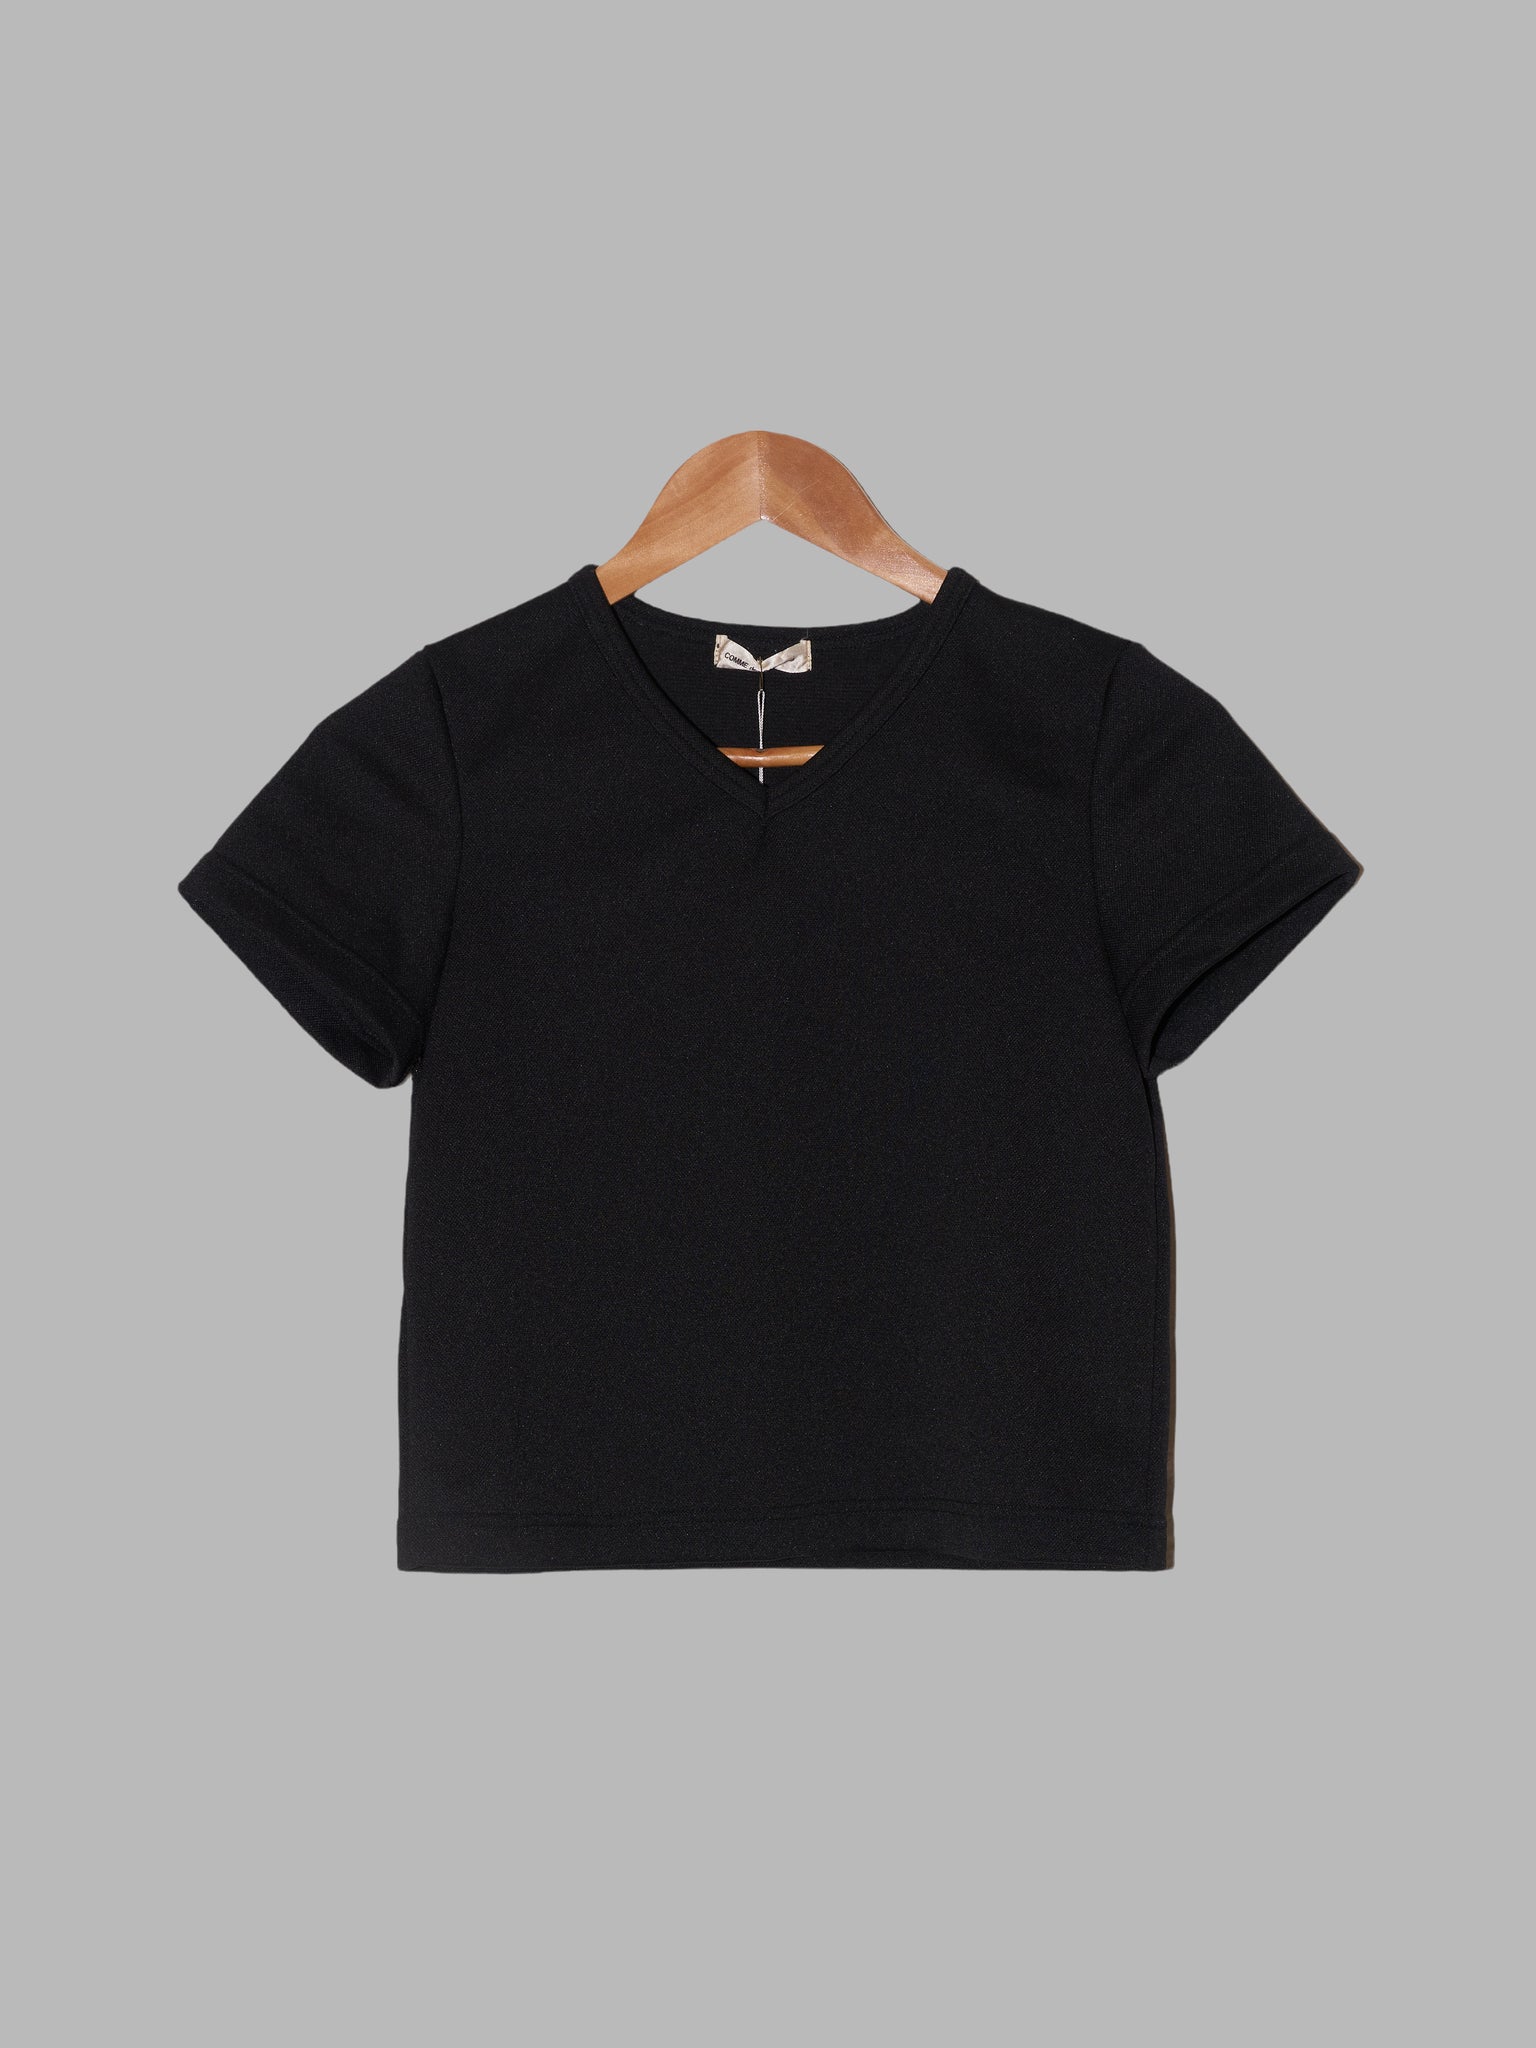 Comme des Garcons 1995 black poly-cotton v-neck t-shirt